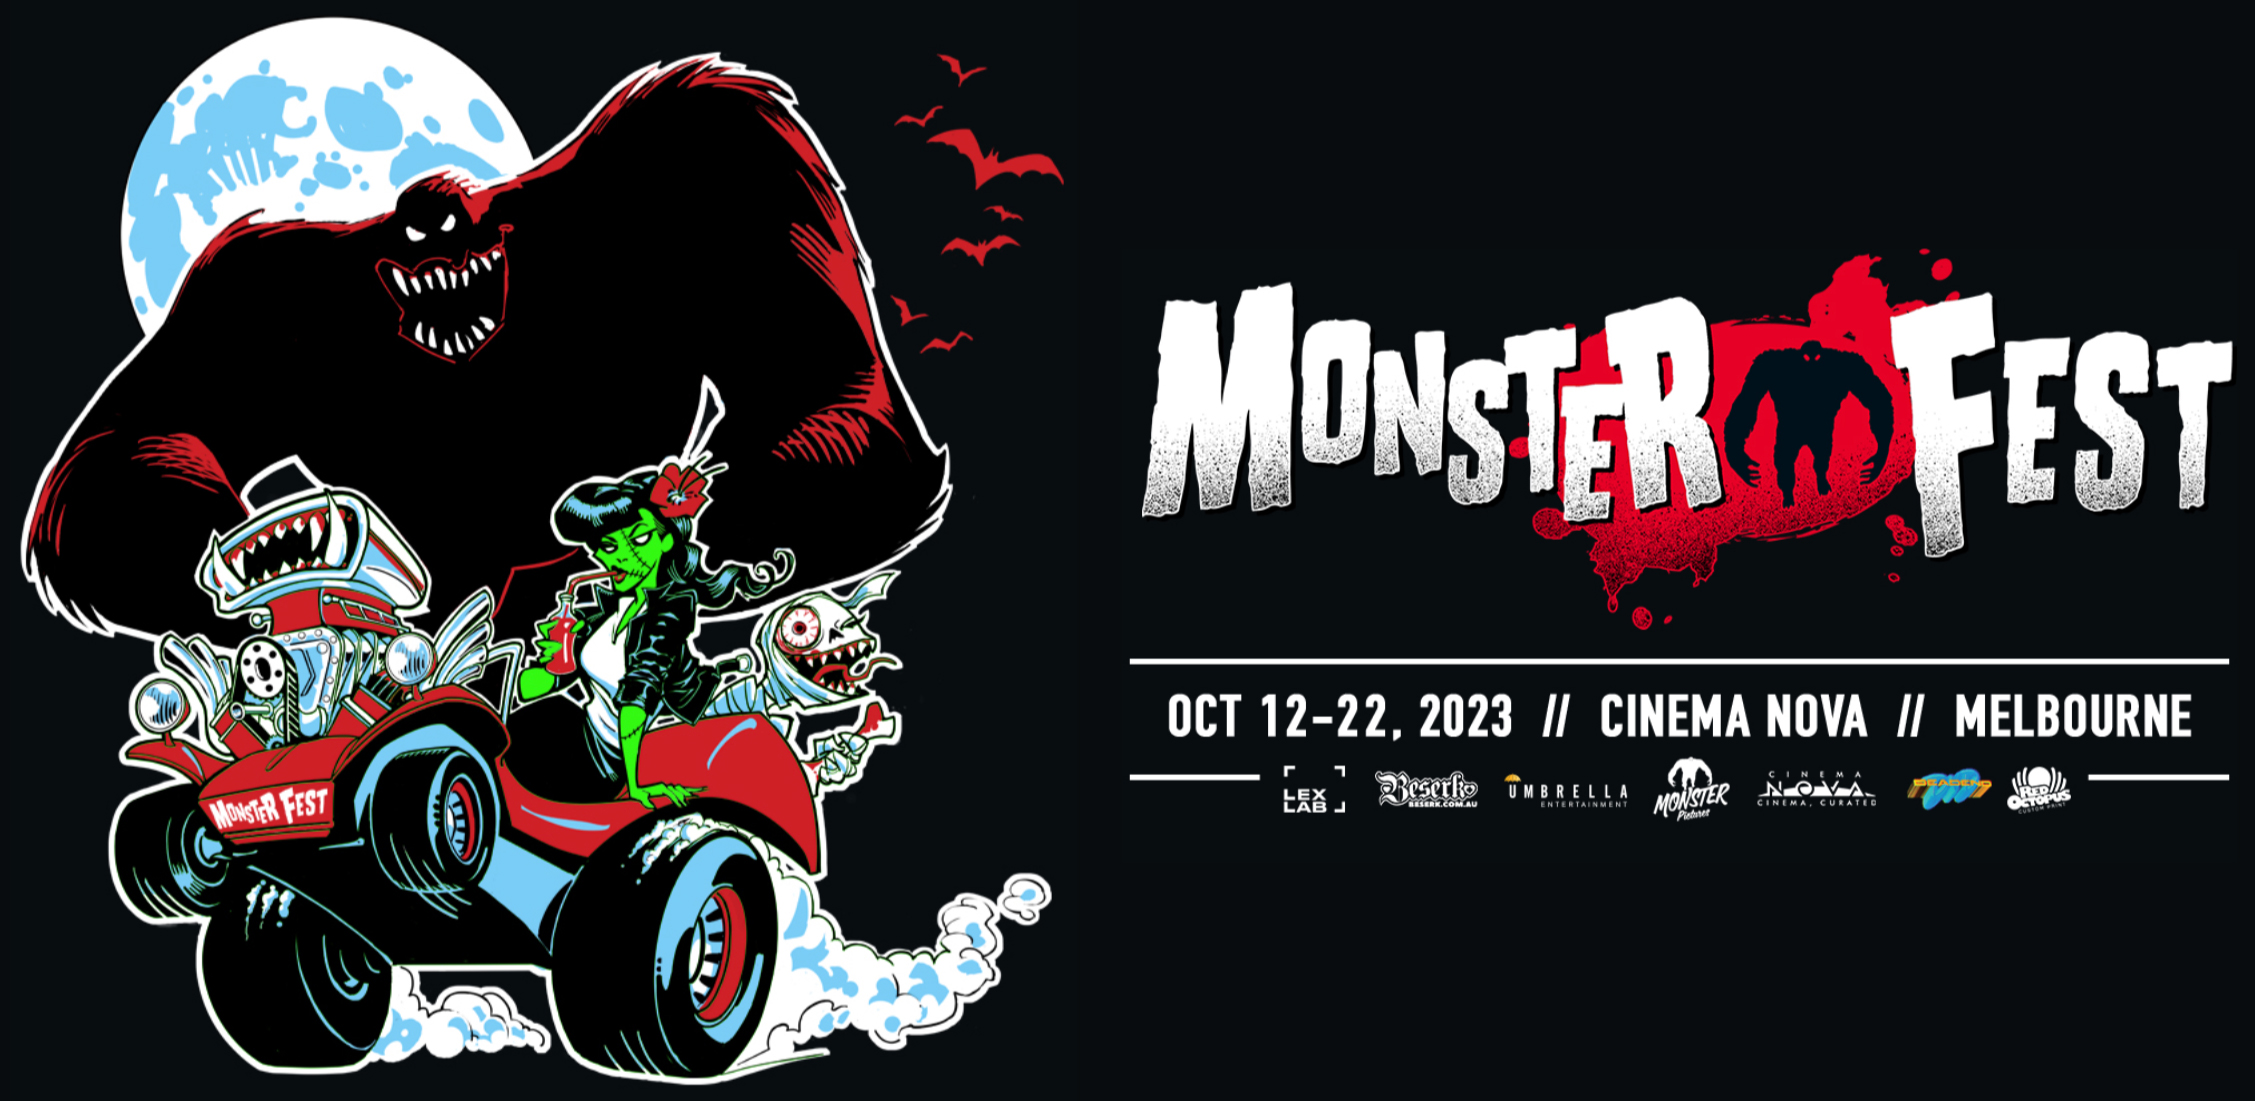 Monster Fest 2021 Coming Soon